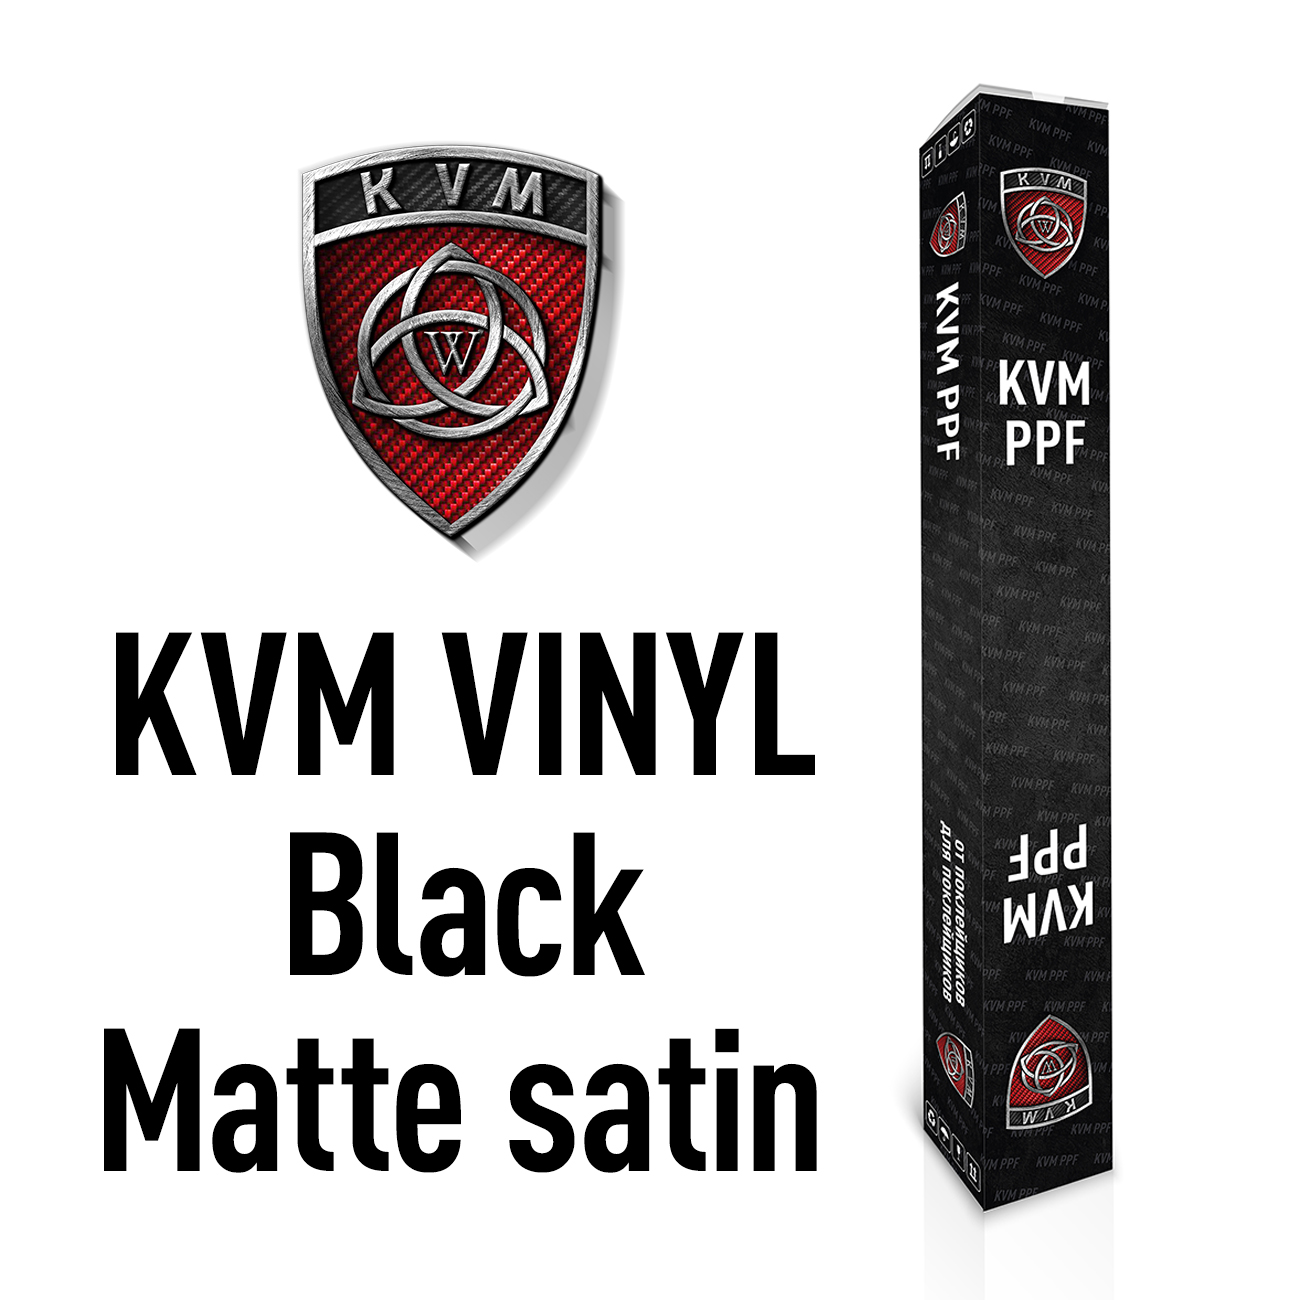 Черная матовая (сатиновая) виниловая пленка KVM VINYL Black Matte satin 1,52